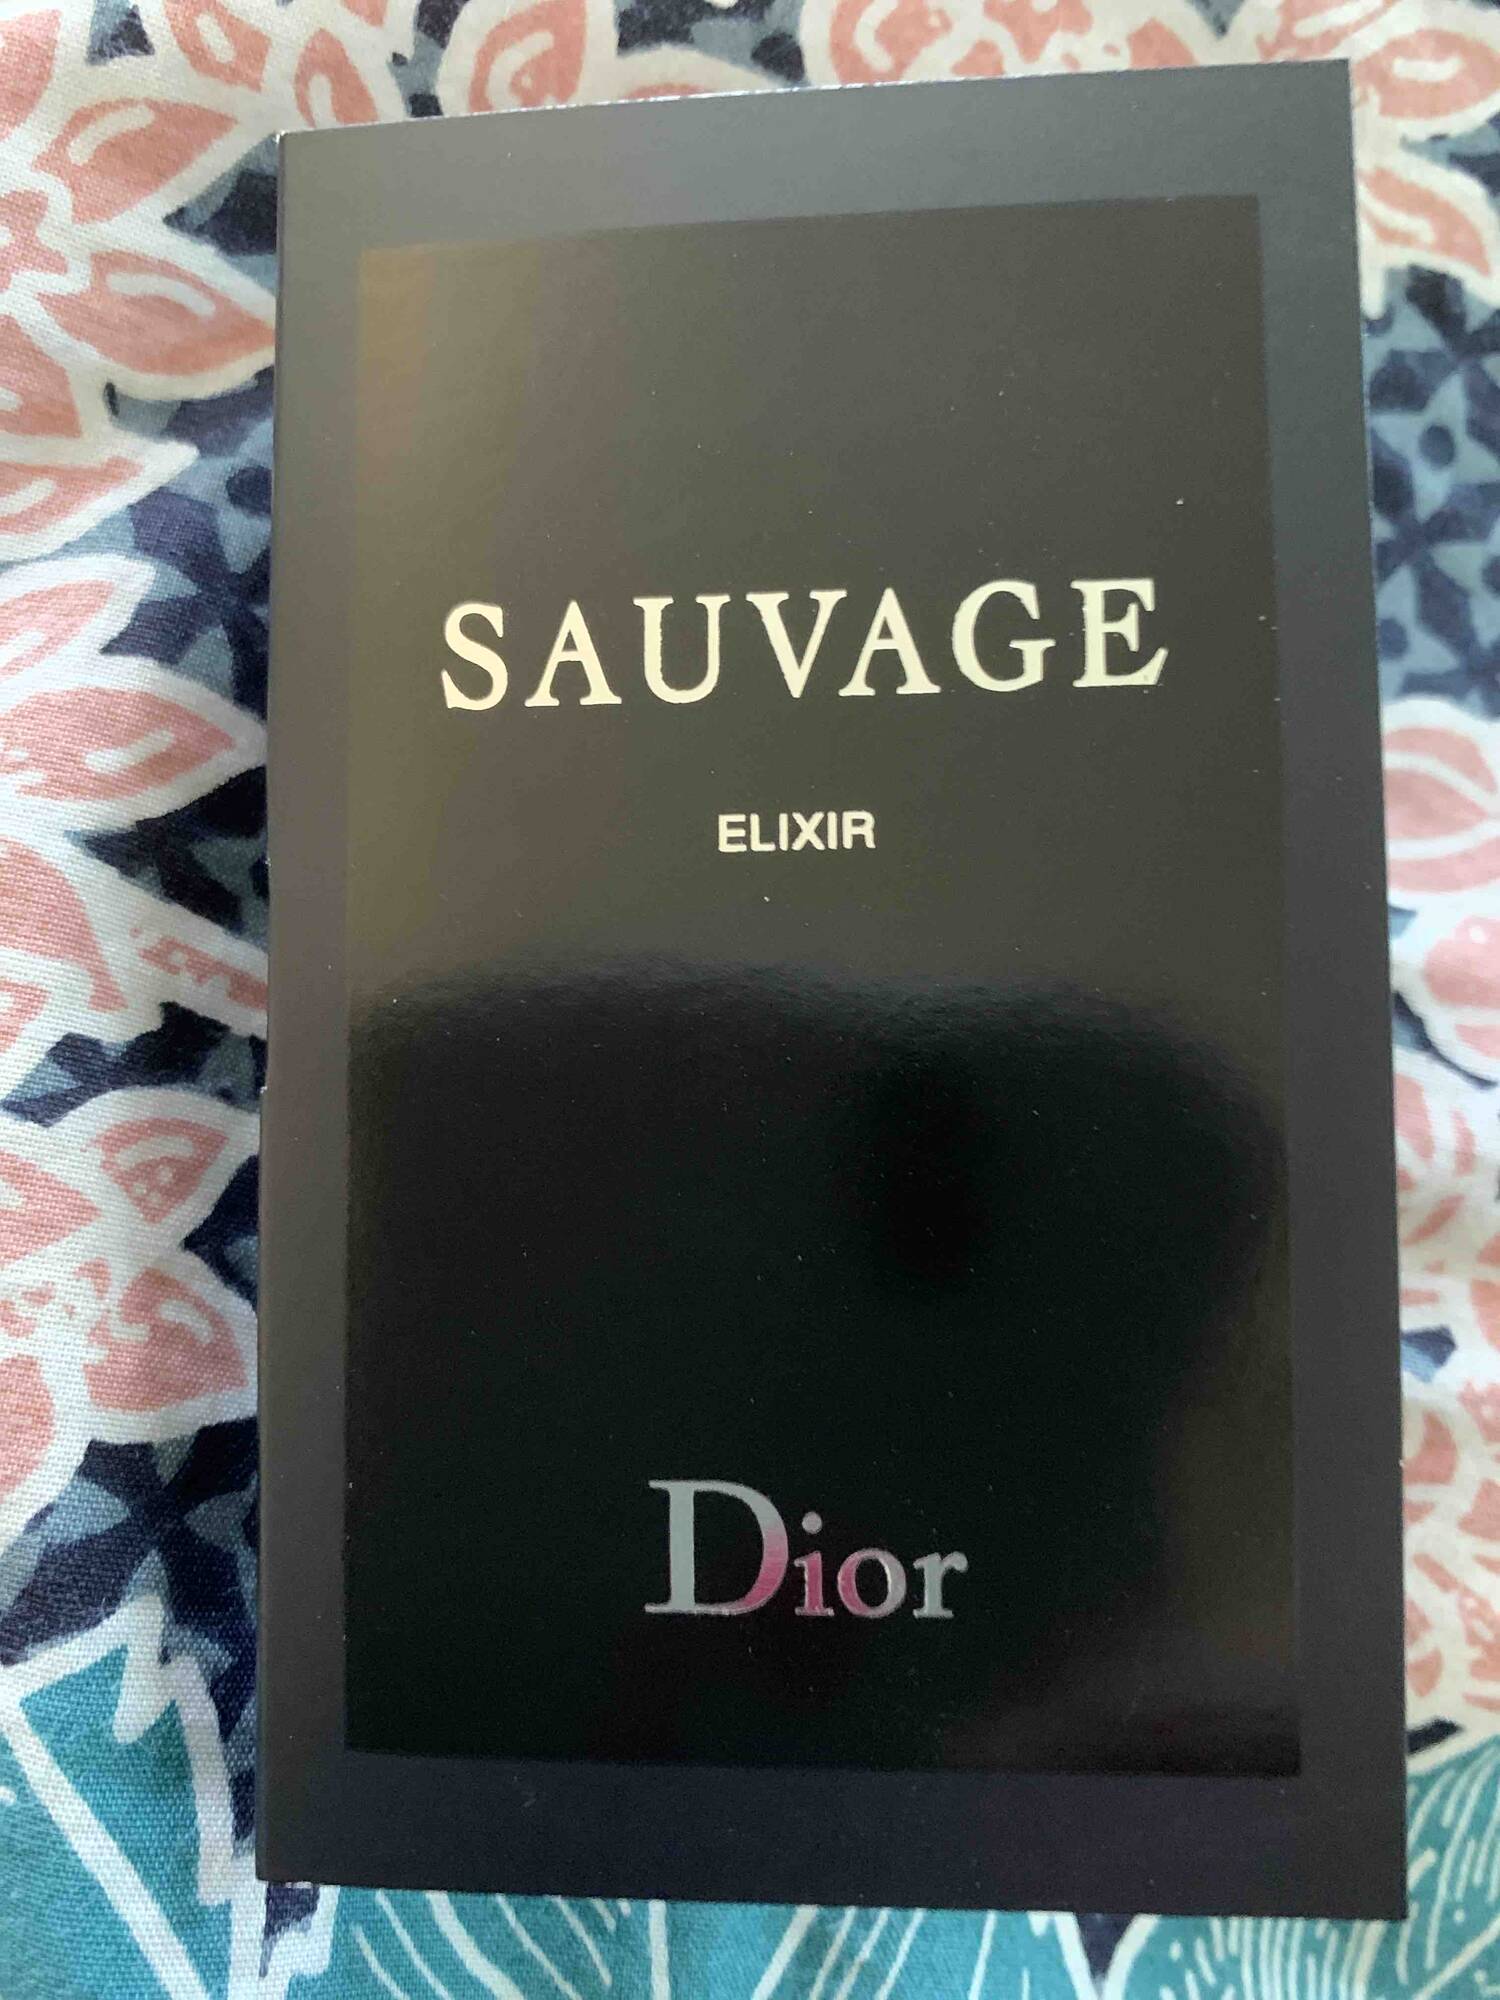 DIOR - Sauvage elixir - Parfum concentré